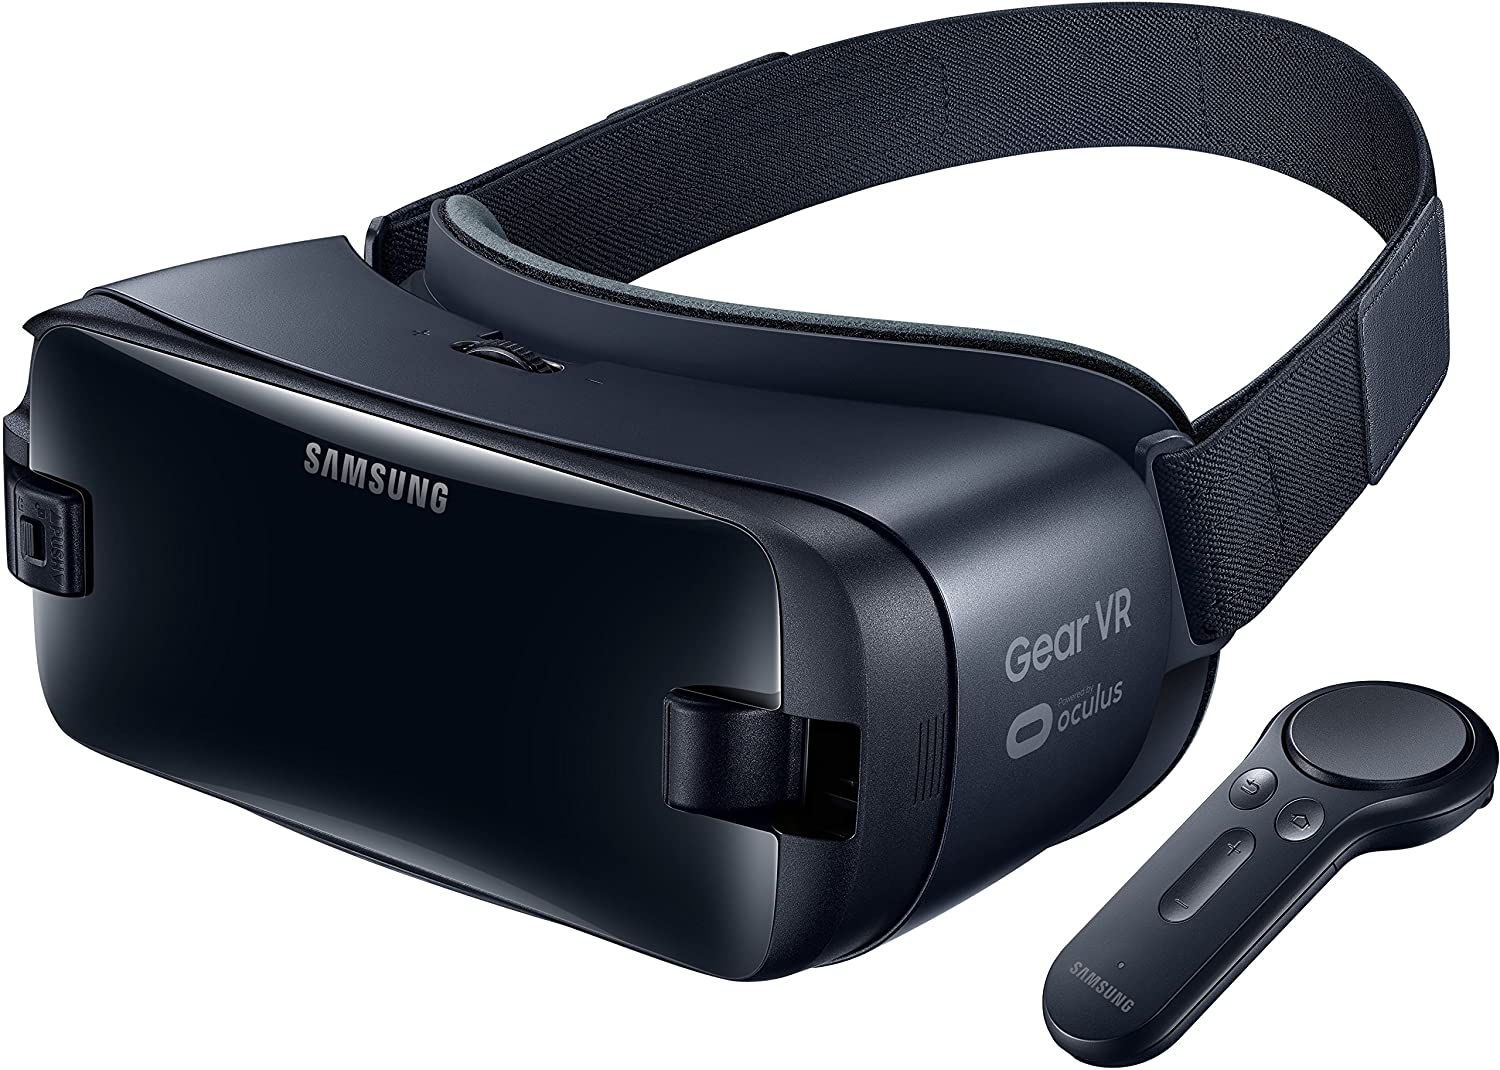 Uitroepteken patrouille ontsmettingsmiddel Samsung Gear VR | SM-R325 | €80 | Nu met een Proefperiode van 30 Dagen